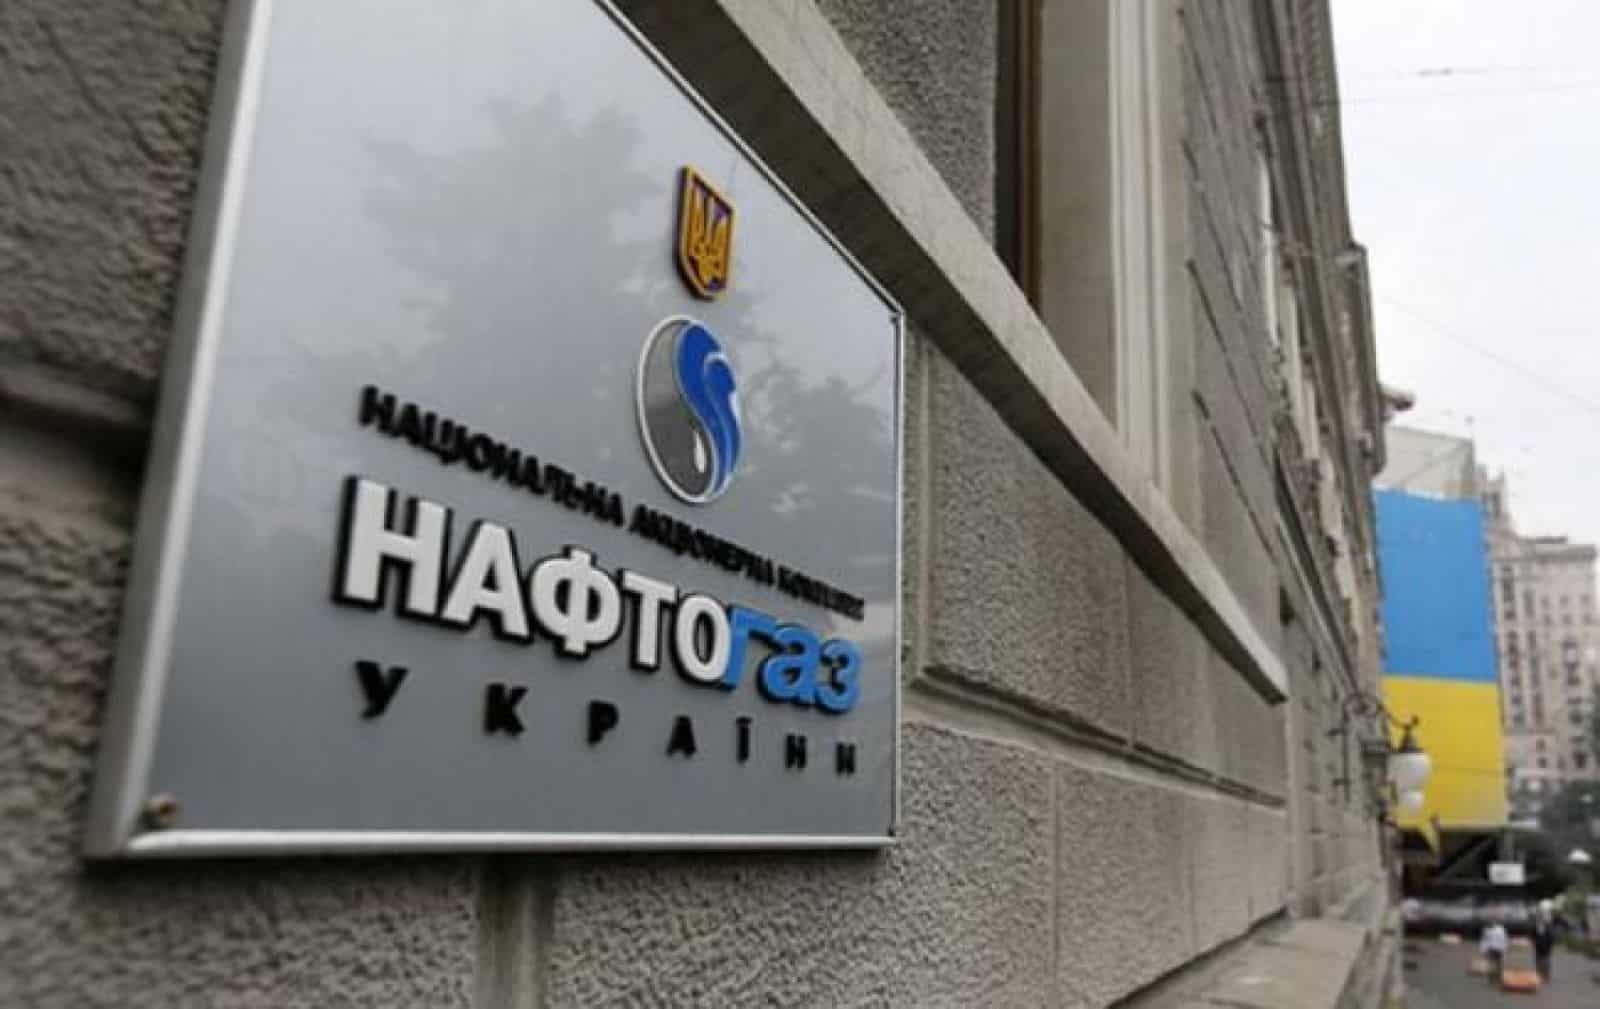  Вітренко більше не працює в компанії “Навфтогаз“: що стоїть за звільненням топ-менеджера